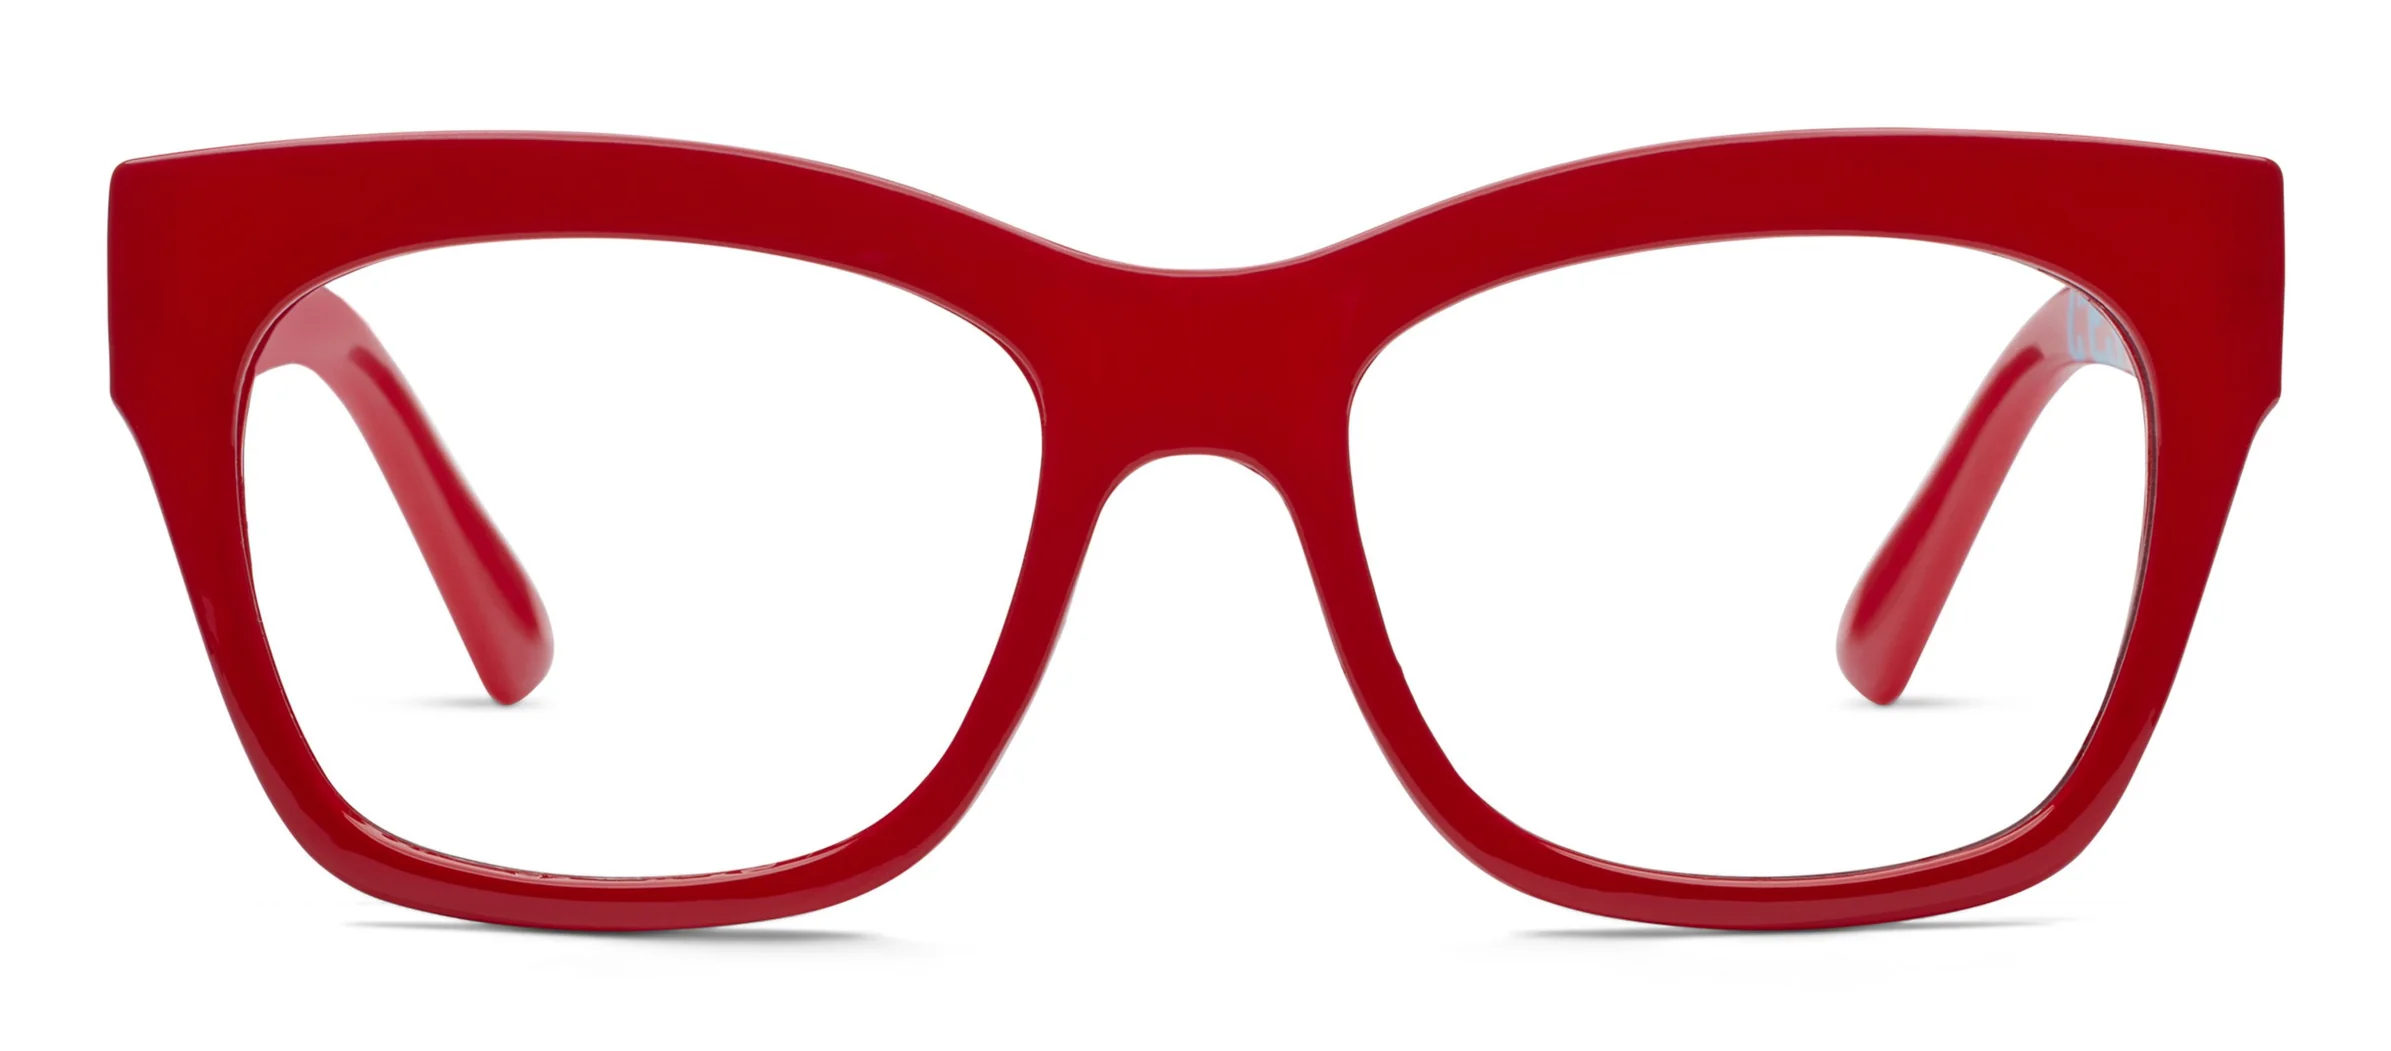 C'est La Vie Red- Peepers Reading Glasses